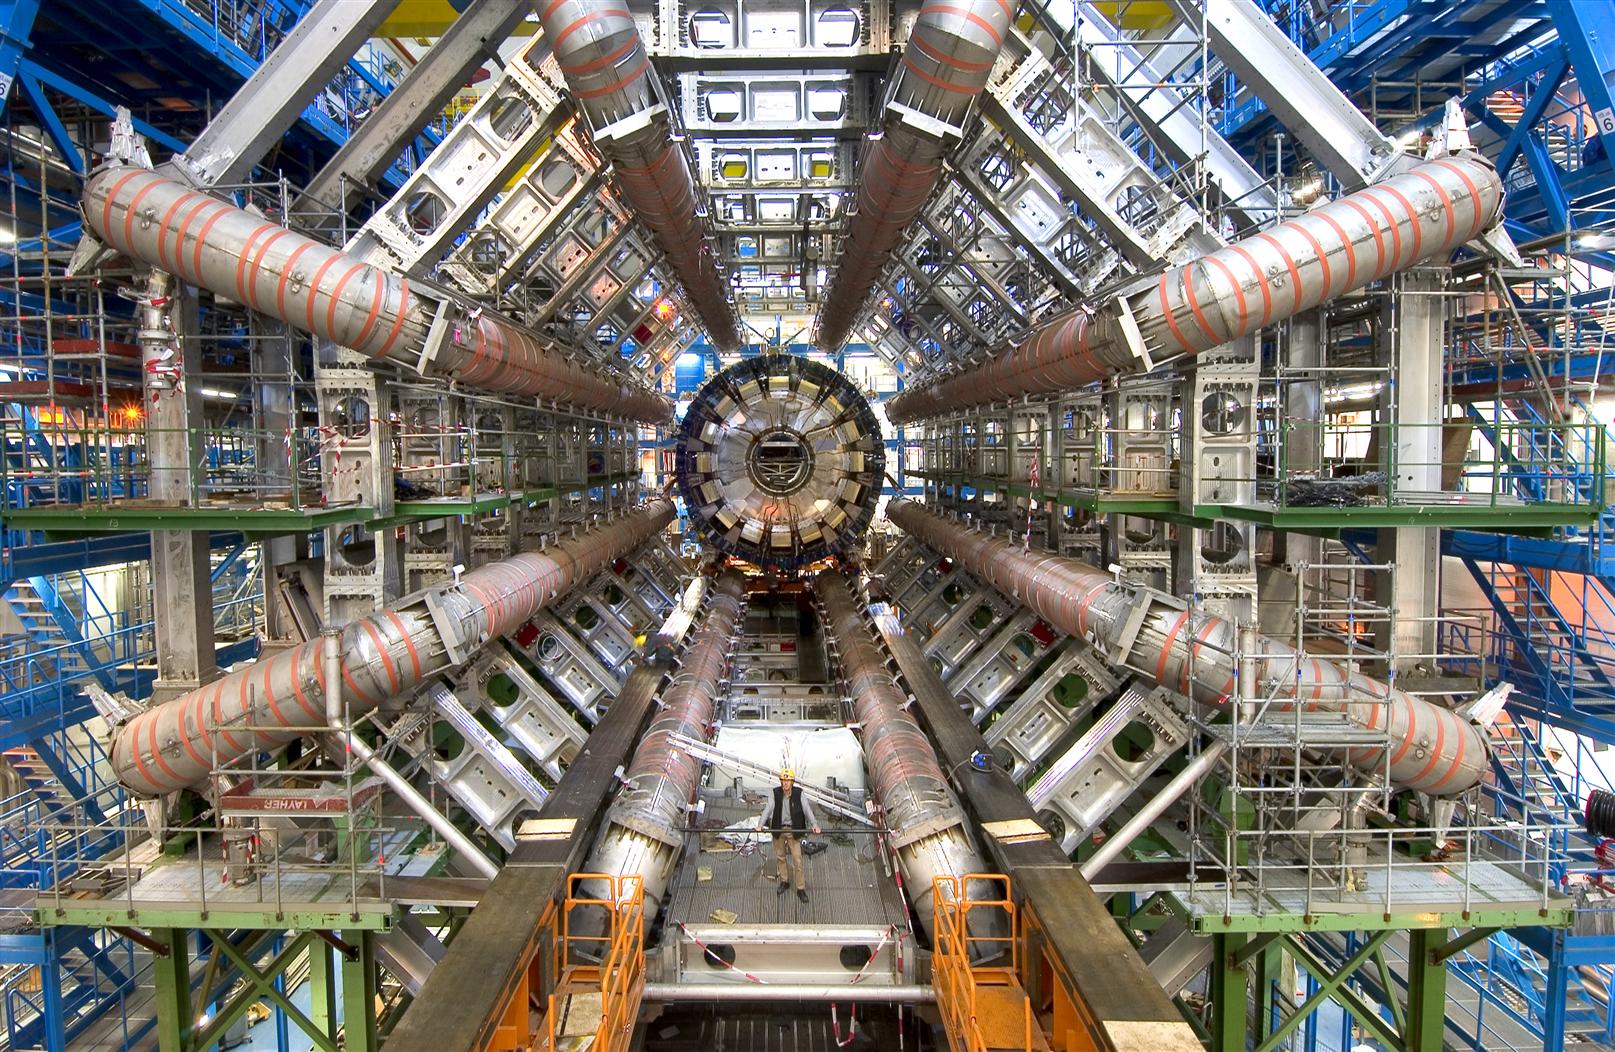 CERN: Ξεφουσκώνει ο ενθουσιασμός για ανακάλυψη «πιο σημαντική από το Χιγκς»